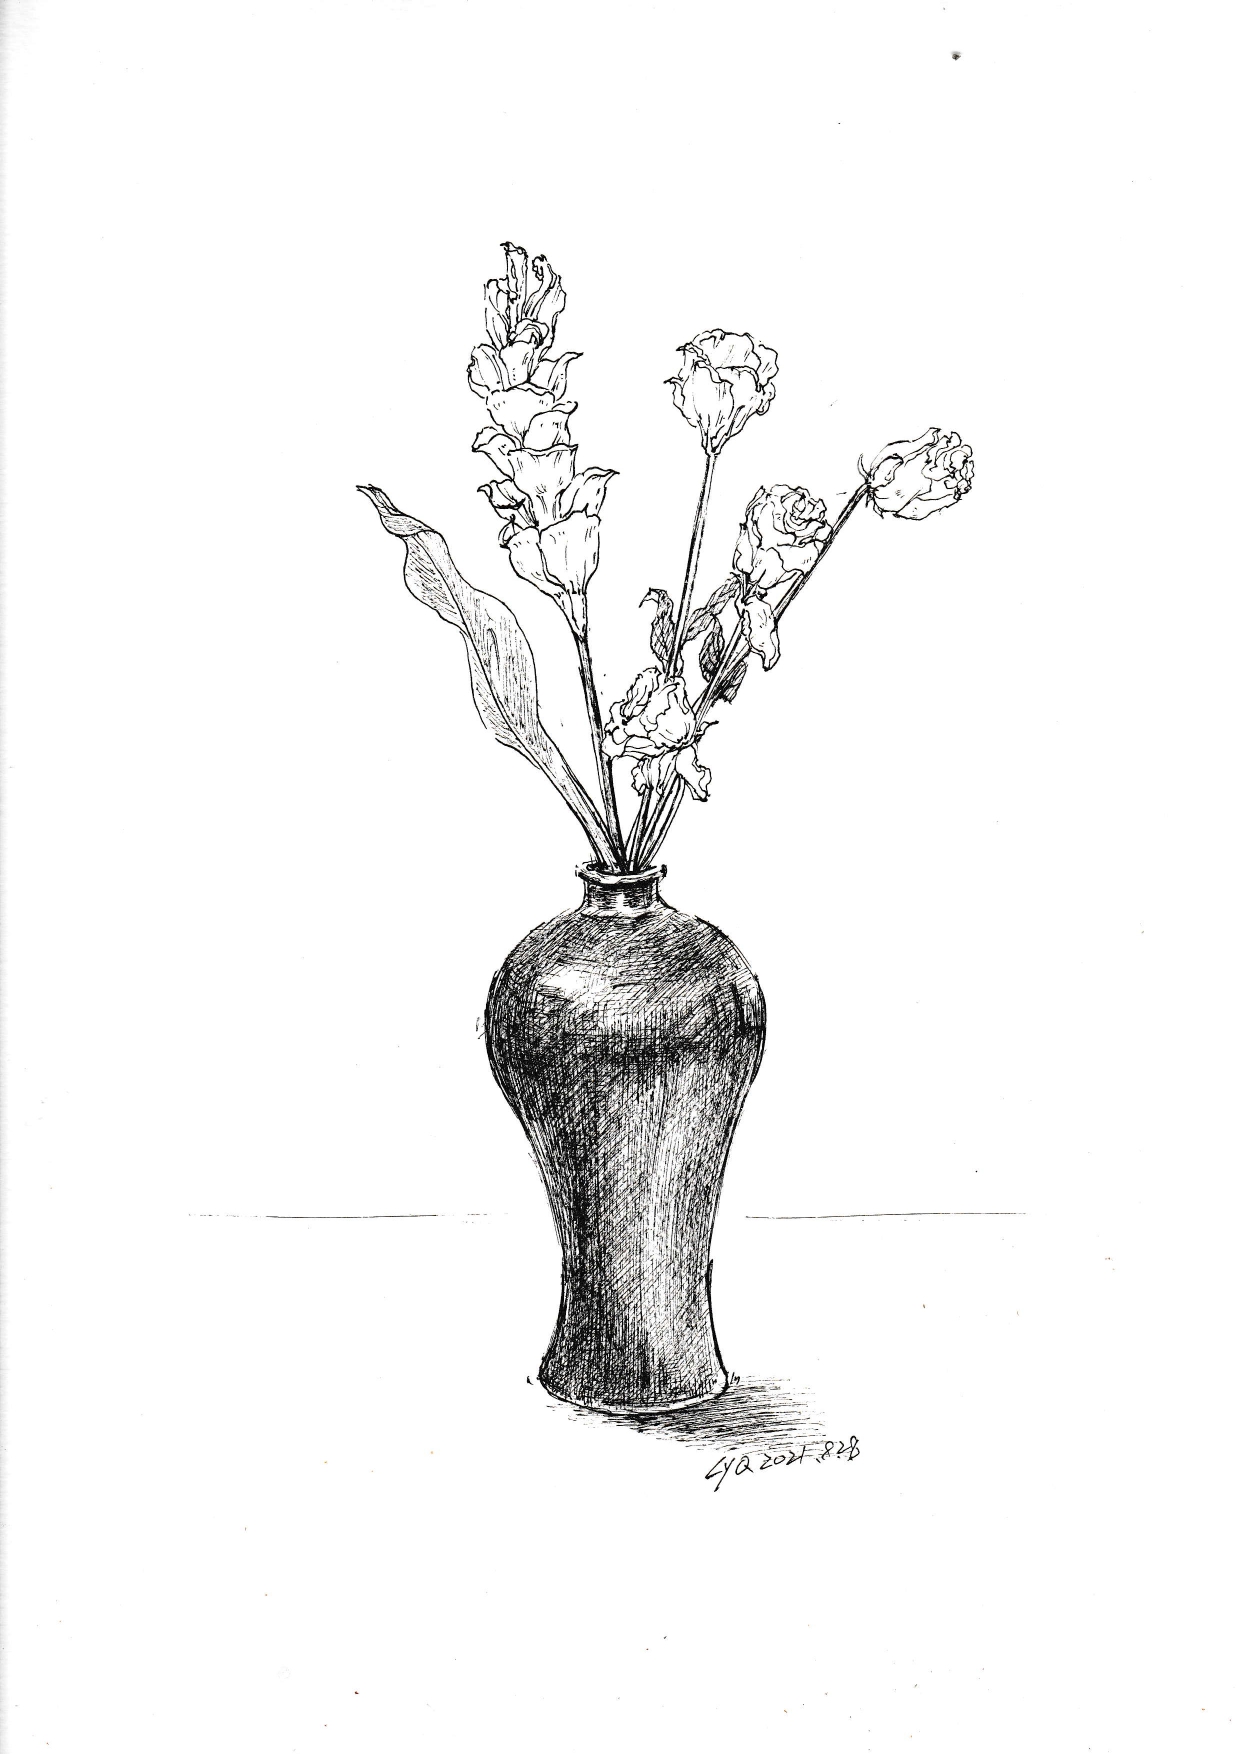 花瓶素描 简笔画图片